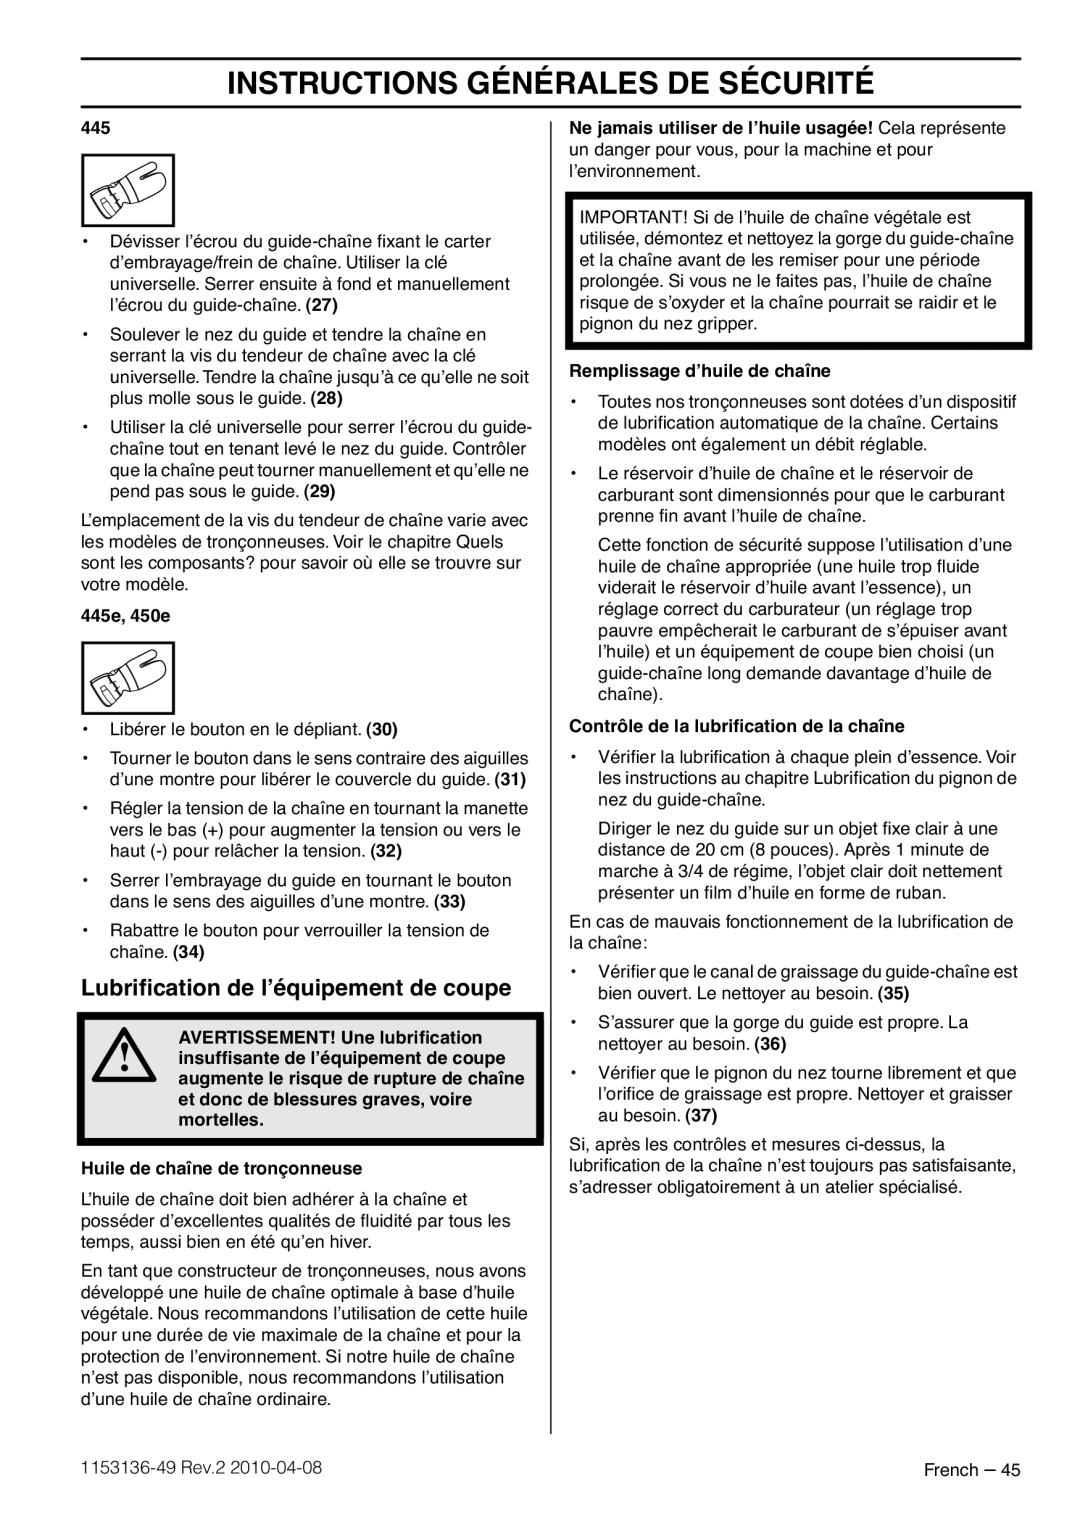 Husqvarna 1153136-49 manuel dutilisation Lubriﬁcation de l’équipement de coupe, Instructions Générales De Sécurité 